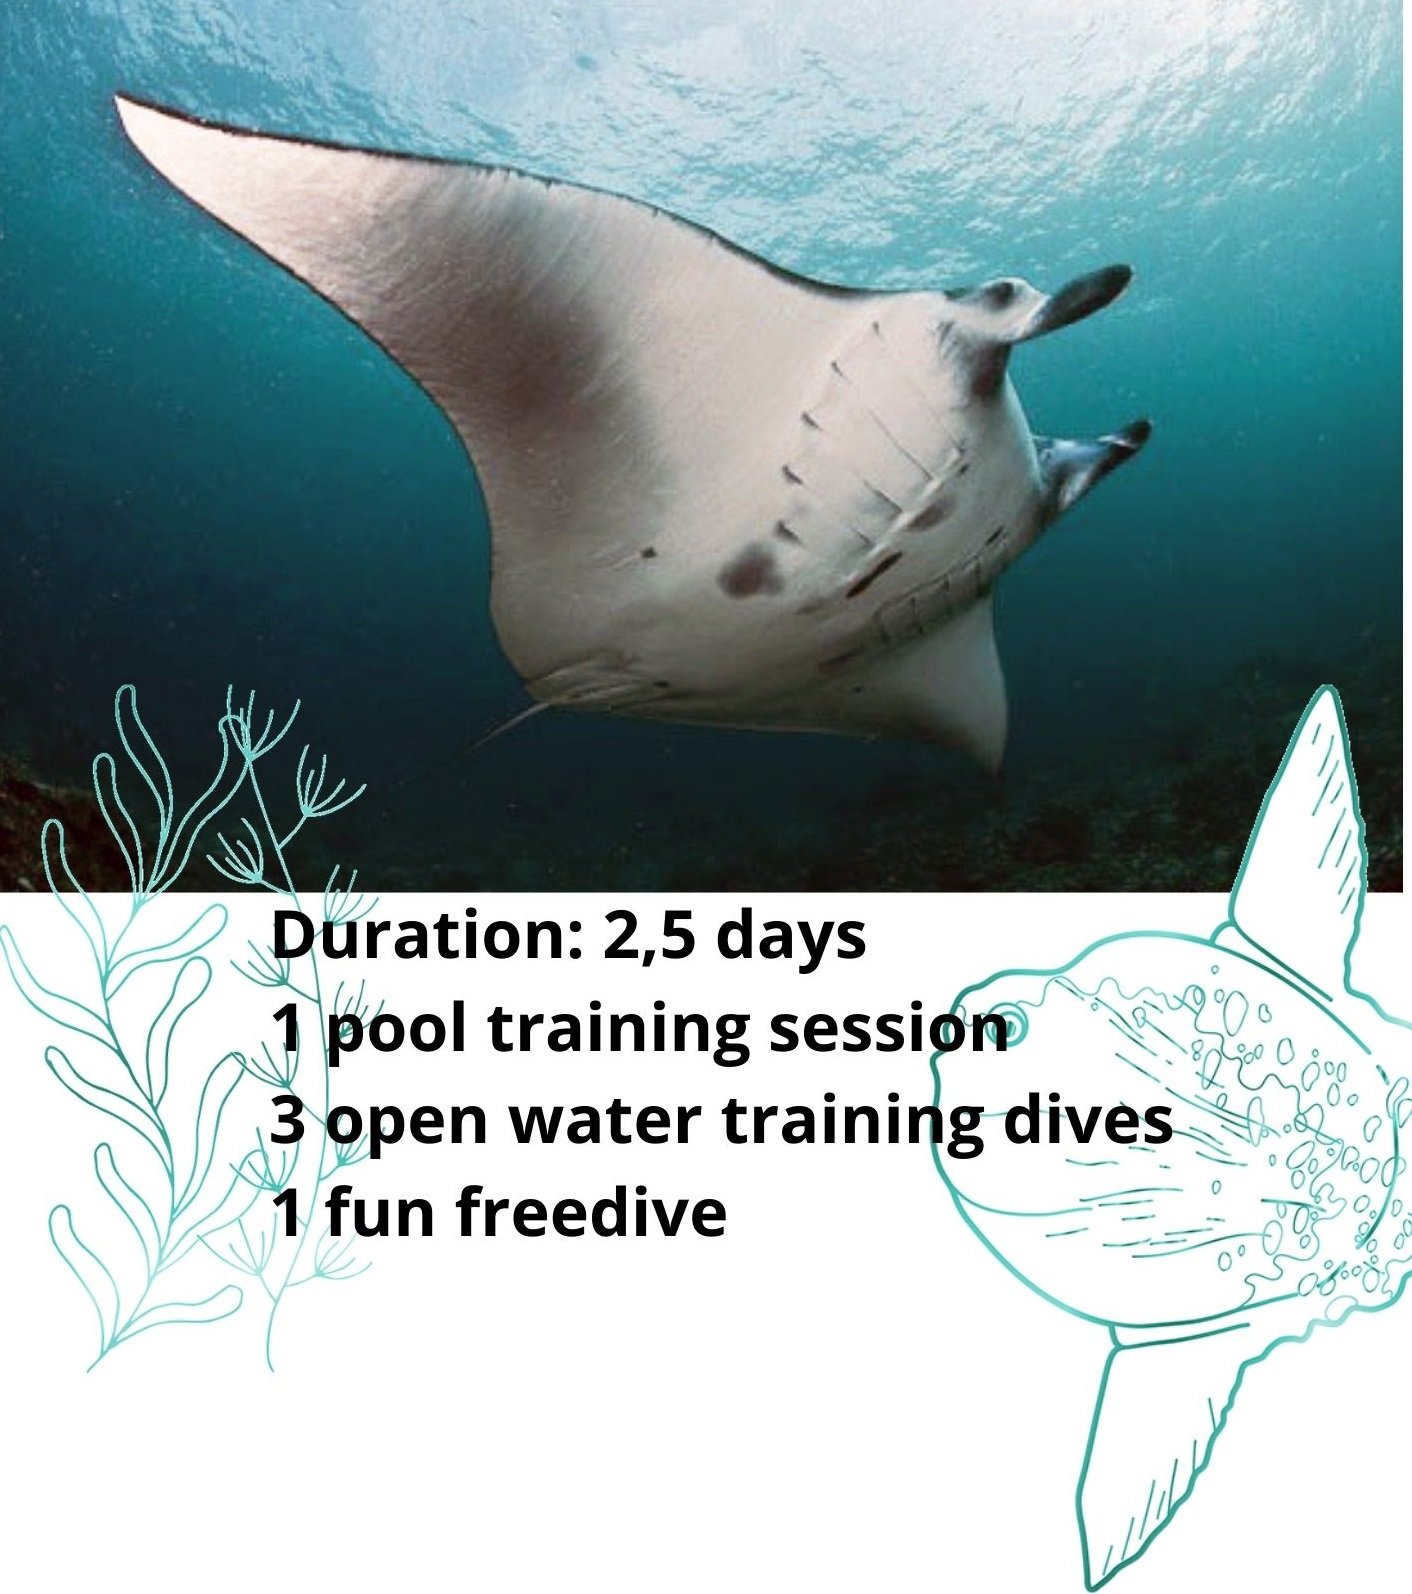 short description of freediving Nusa penida course